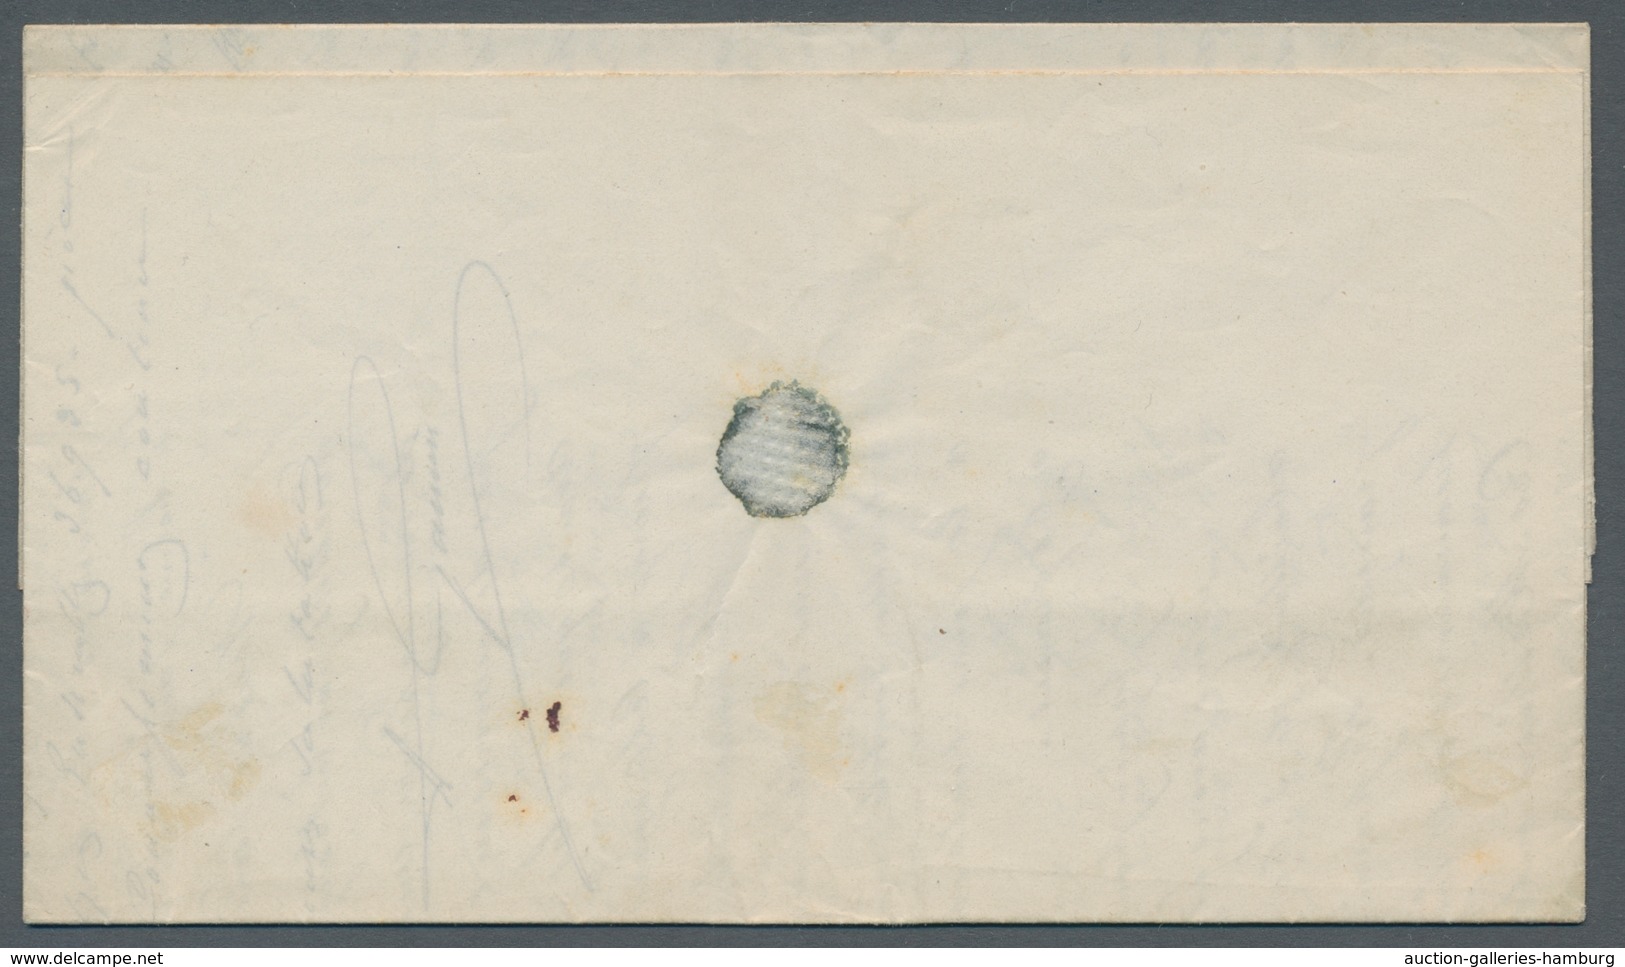 Reunion: 1820-66, interessante Sammlung von 122 markenlosen Altbriefen in zwei Briefealben mit diver